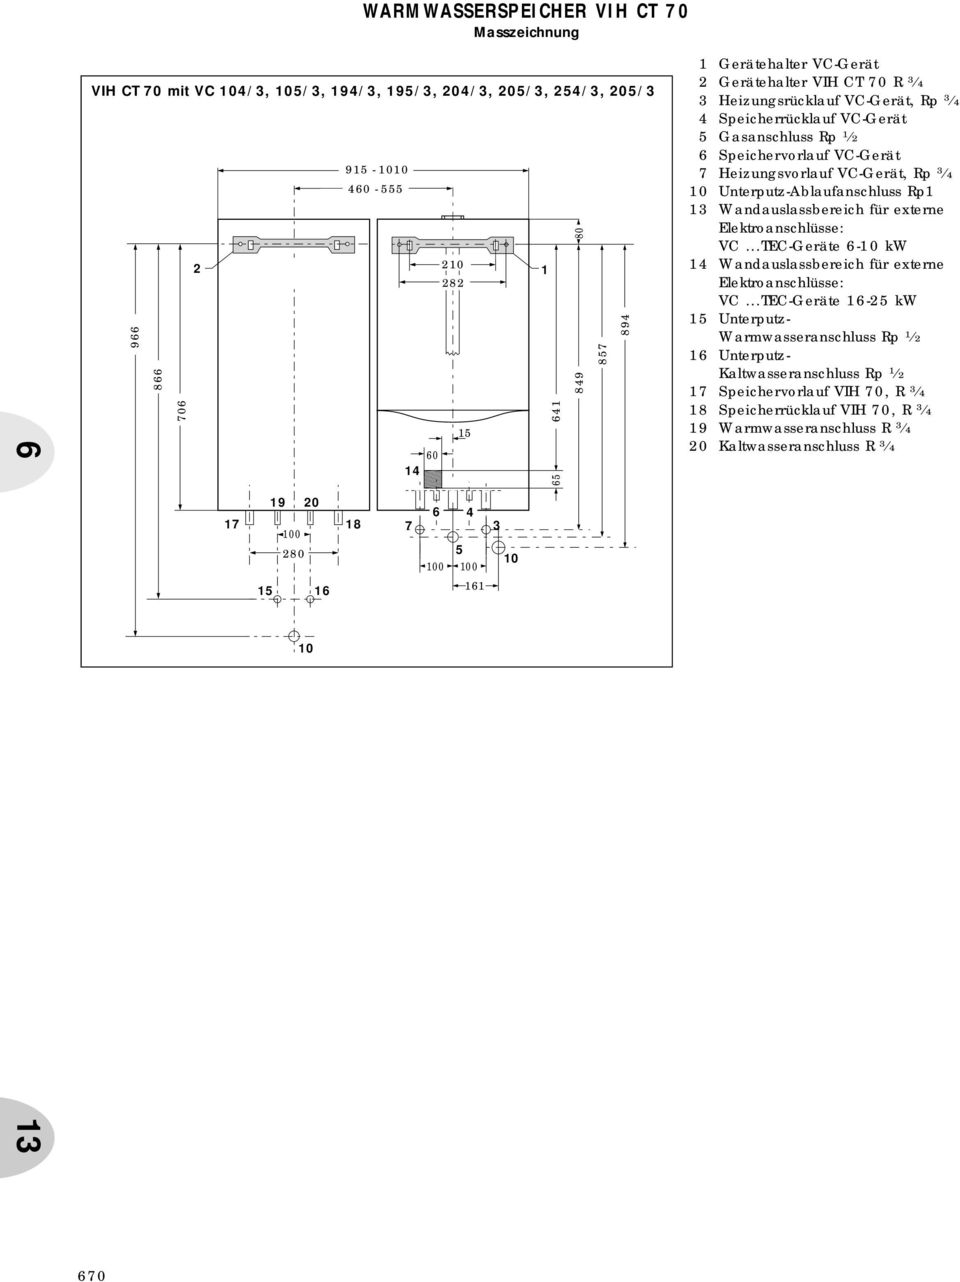 Wandauslassbereich für externe Elektroanschlüsse: VC...TEC-Geräte -0 kw Wandauslassbereich für externe Elektroanschlüsse: VC.